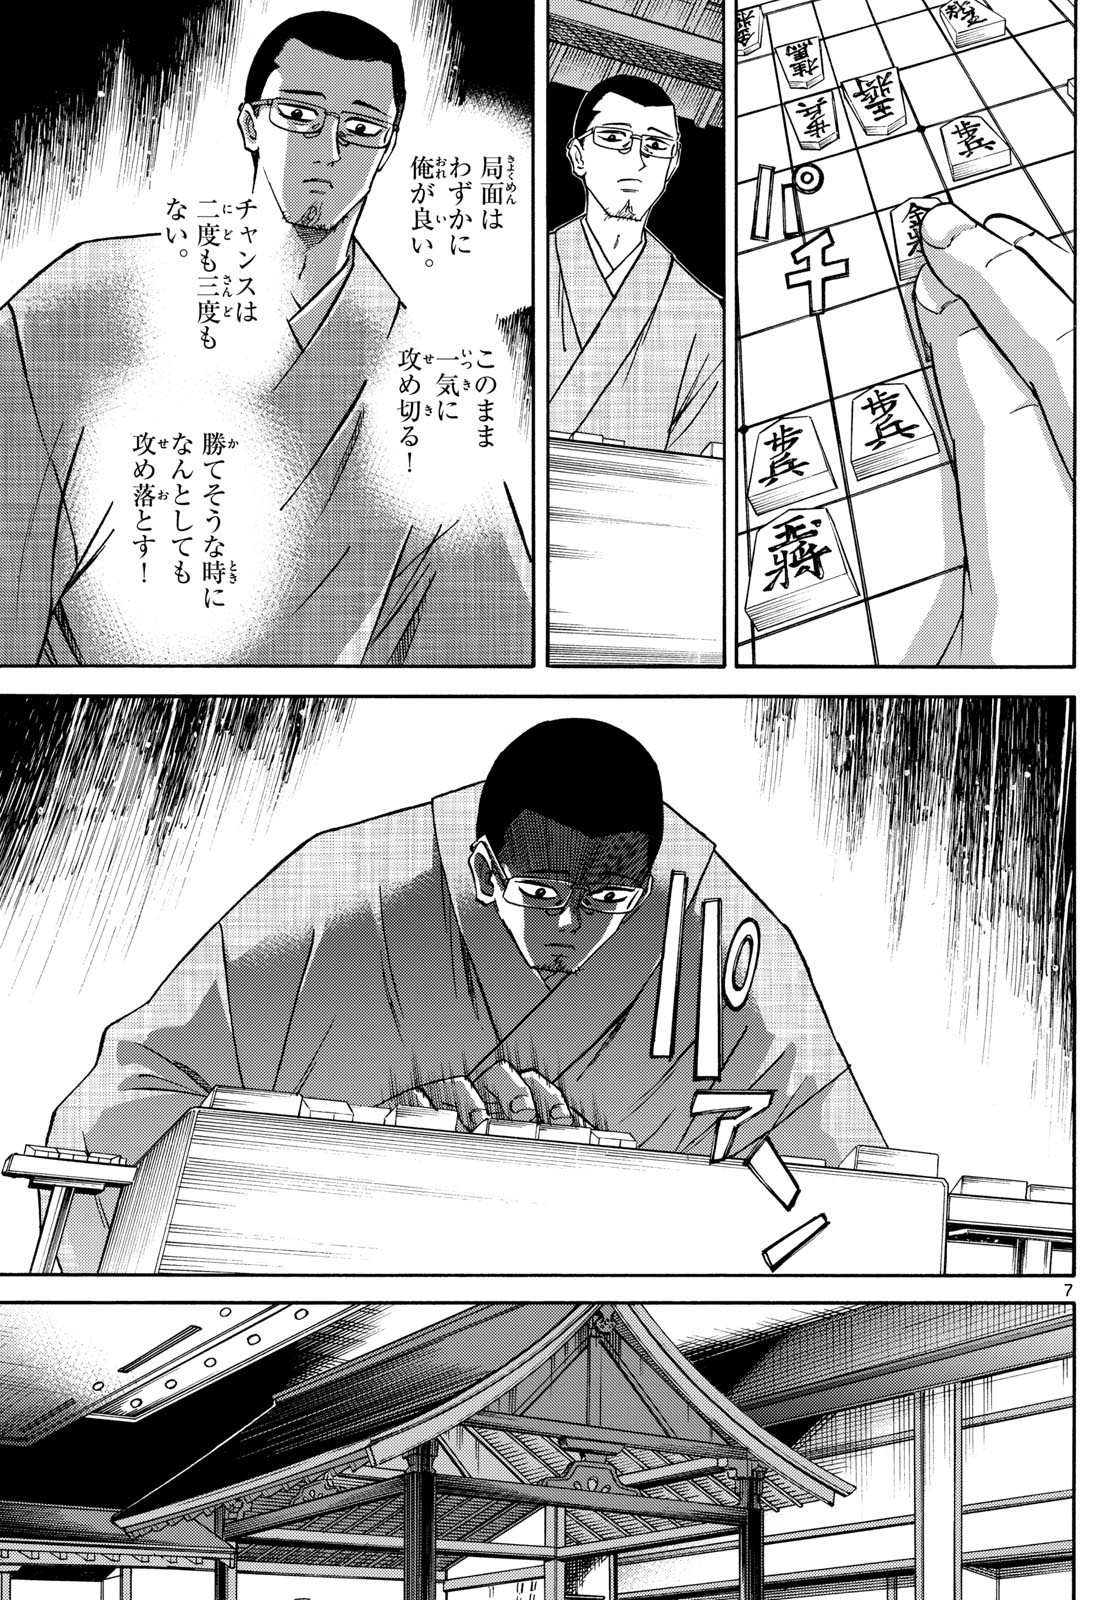 Ryu-to-Ichigo - Chapter 155 - Page 7